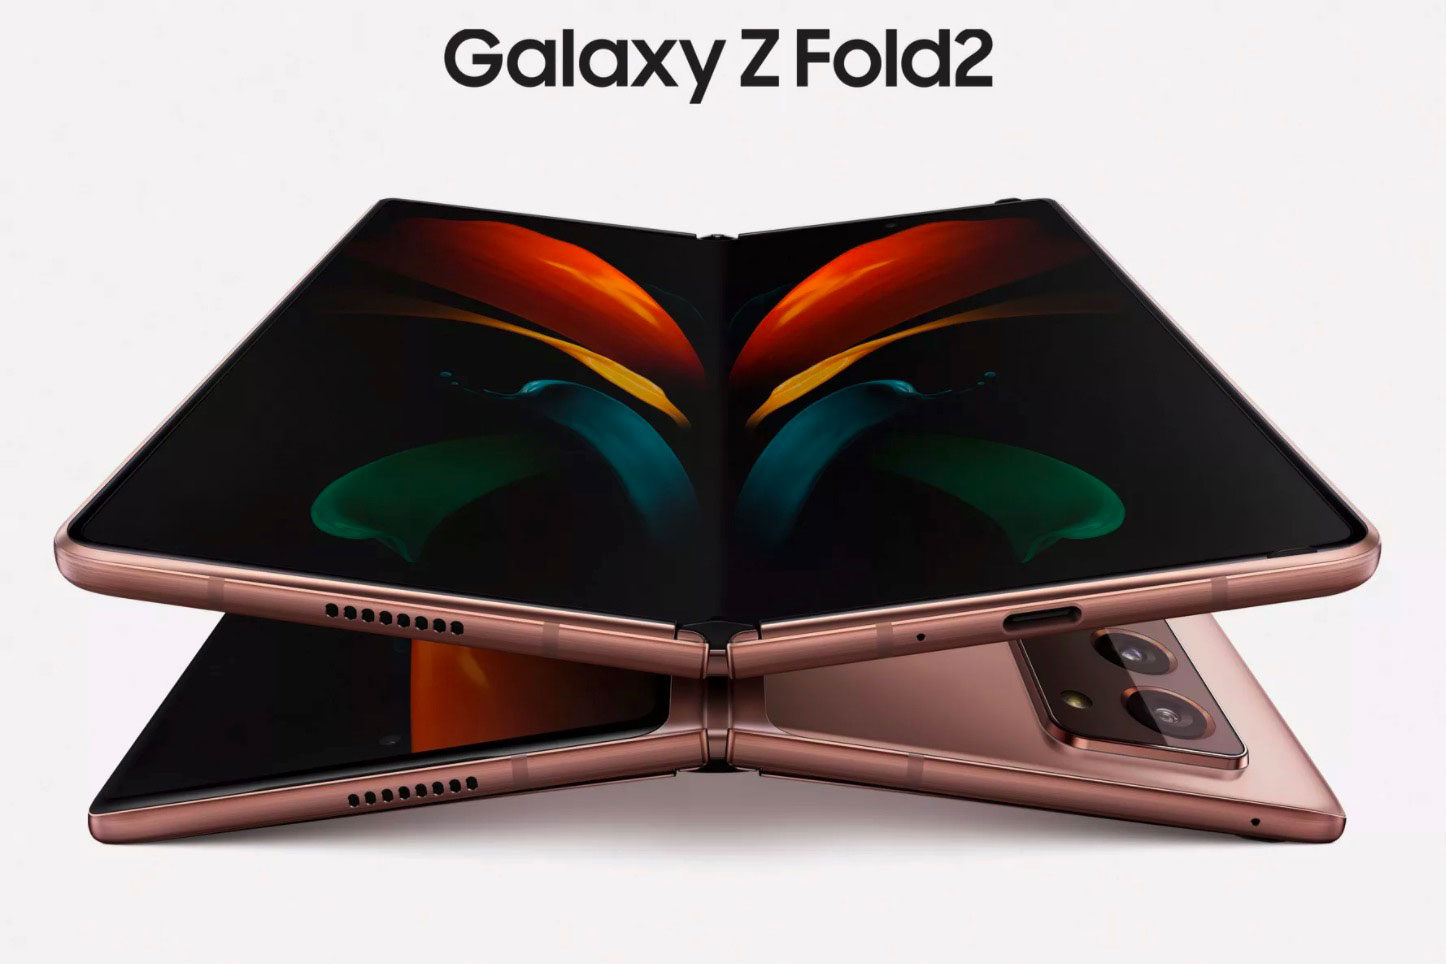 Le Galaxy Z Fold 2 a été officialisé, et il a beaucoup de charme